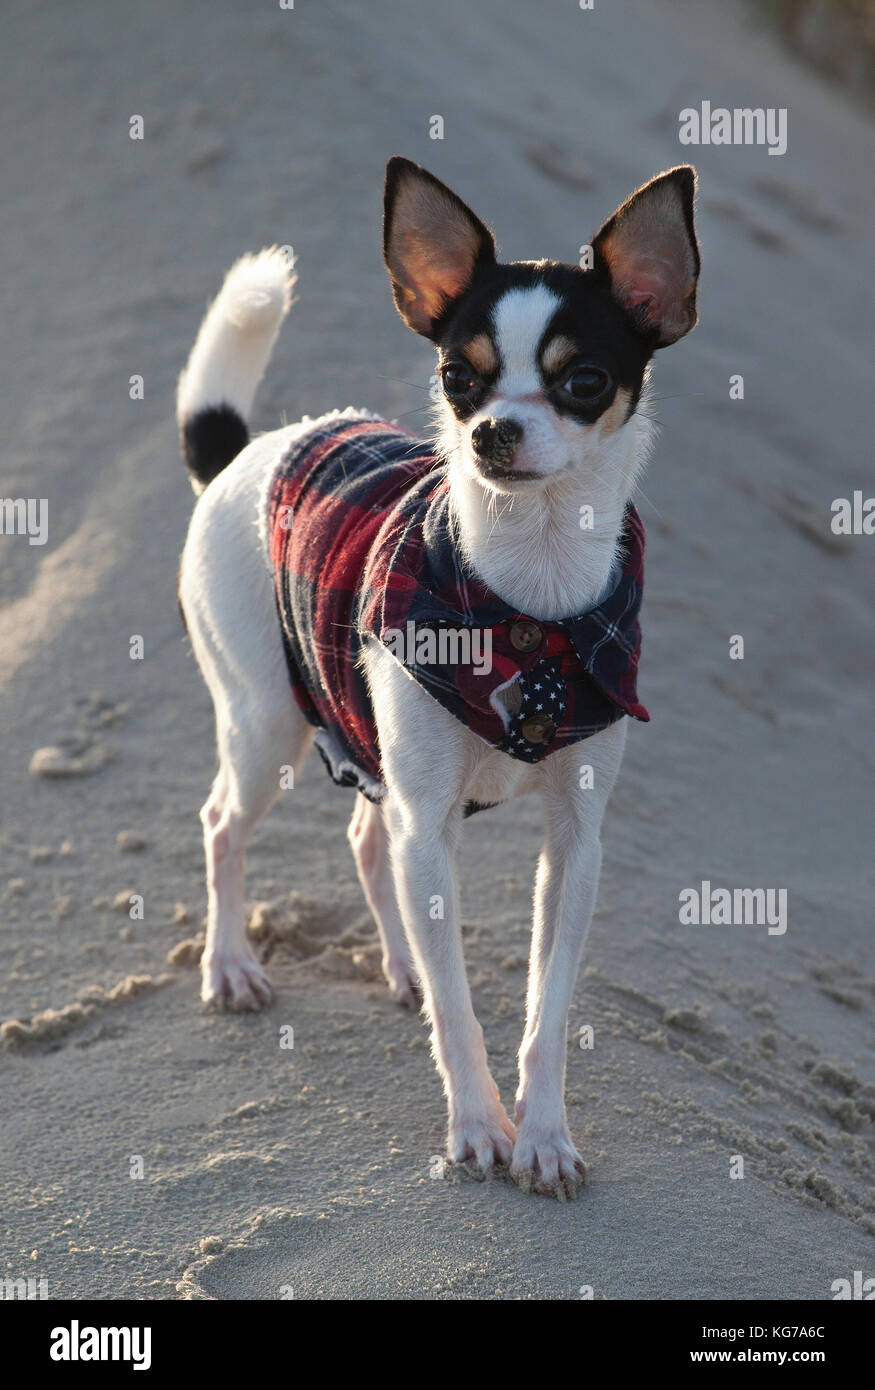 Der Chihuahua Emma steht auf einer kleine Düne im Sand und blickt aufgeregt in die Kamera, la snoopy Chihuahua Emmily semble adorable avec ses grandes oreilles Banque D'Images